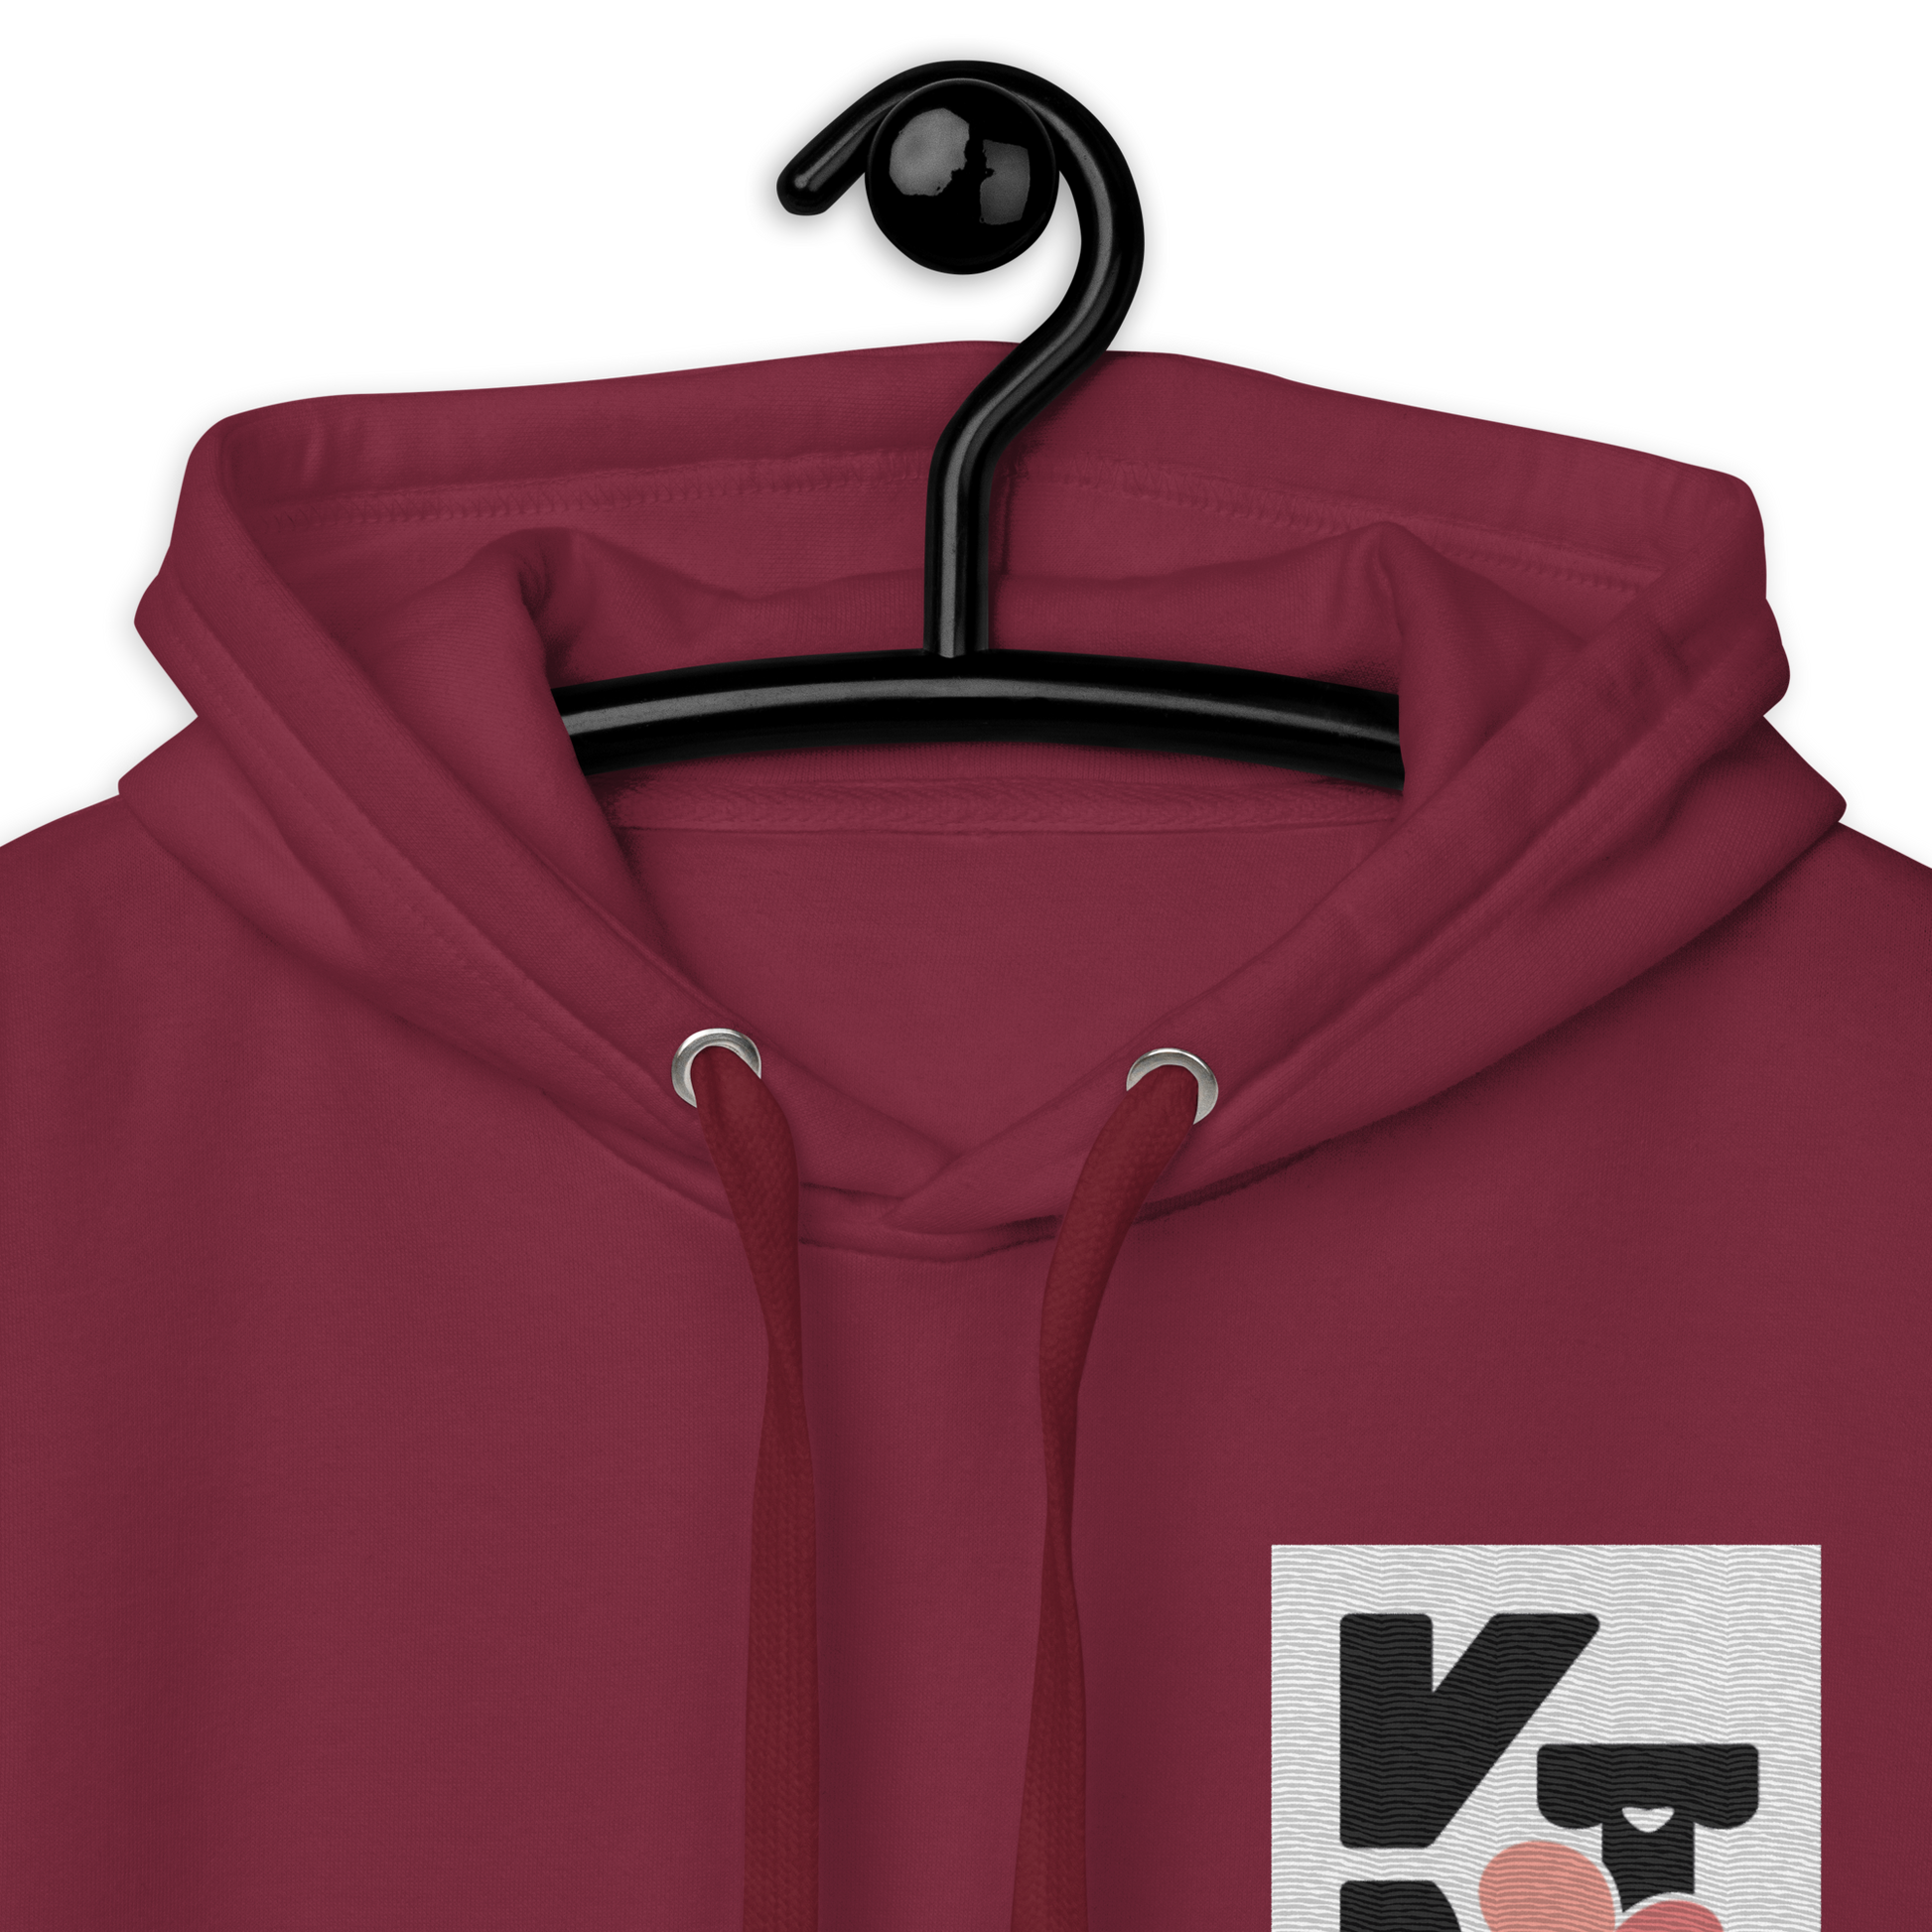 Unisex-Kapuzenpullover "Wip Wip Hurra" - hochwertiger Hoodie in elegantem Dunkelrot mit auffälligem Klexgetier Logo für Hundeliebhaber und Sportbegeisterte.